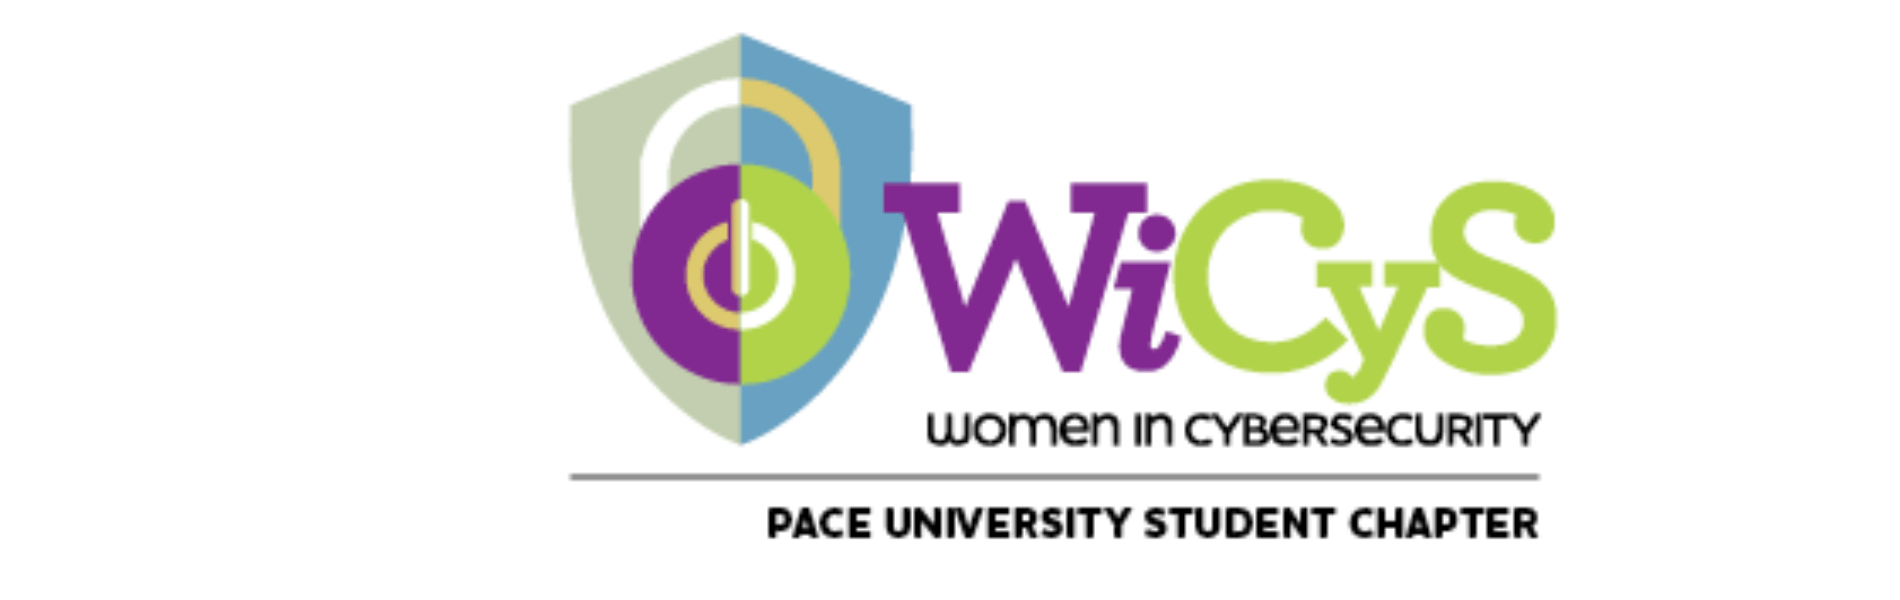 Pace Women in Cybersecurity